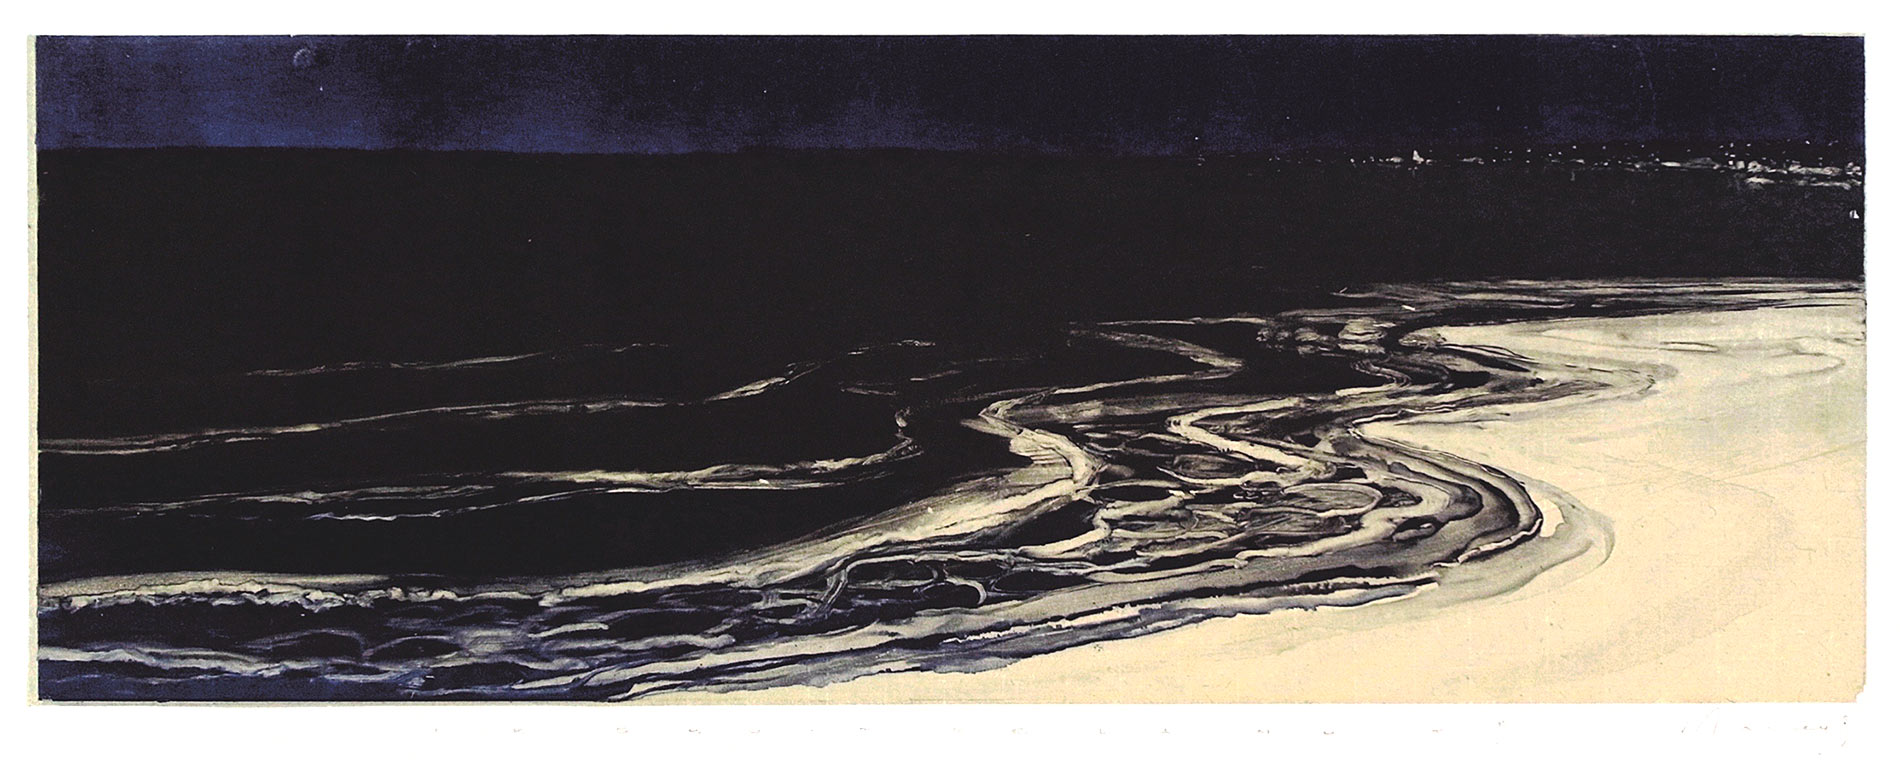 Le bruit de la nuit 3. Monotype, 20 x 55,5 cm, 2013